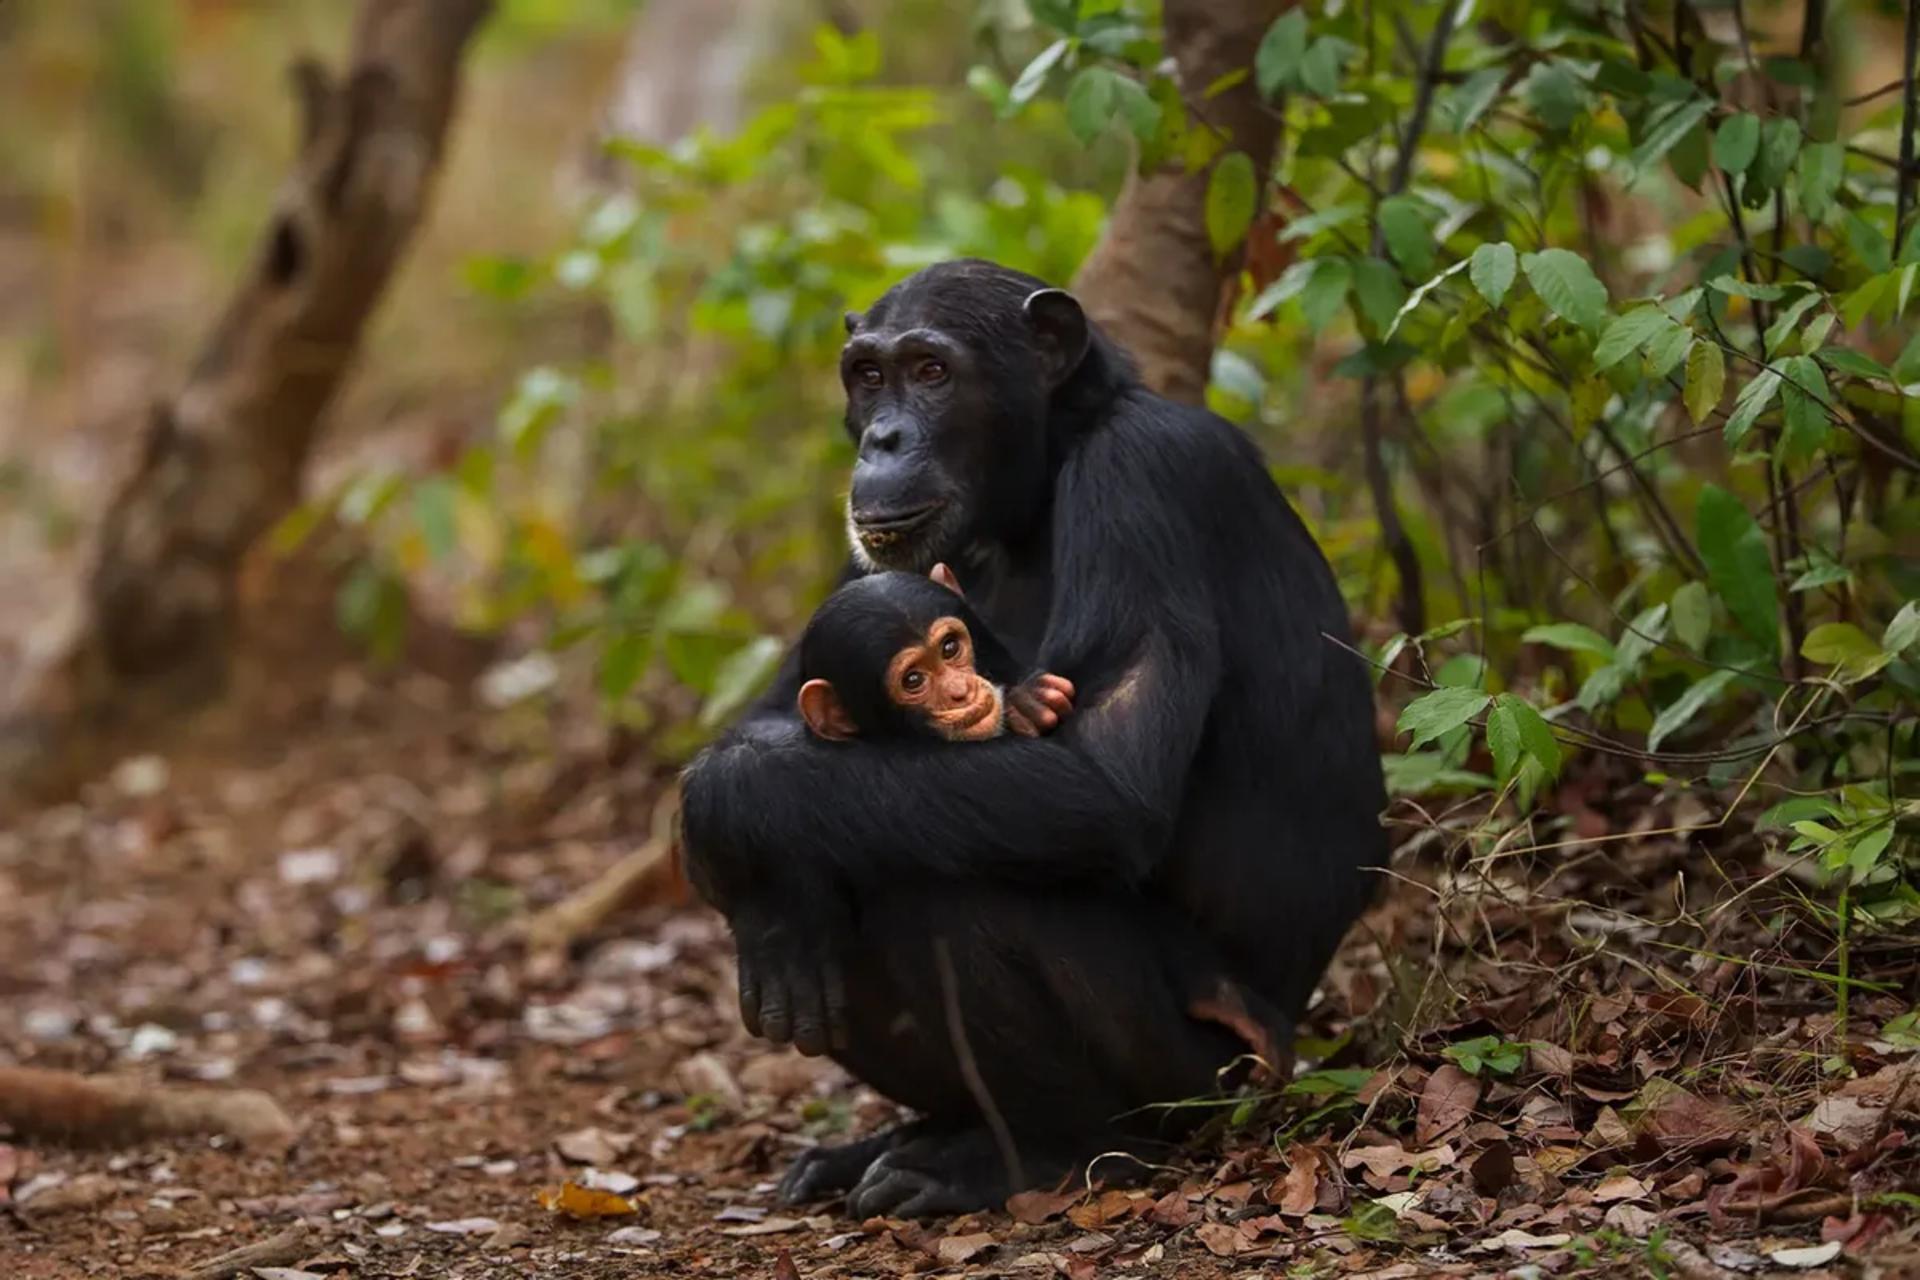 مرجع متخصصين ايران تصويري از يك شامپانزه كه فرزند خود را در آغوش گرفته است